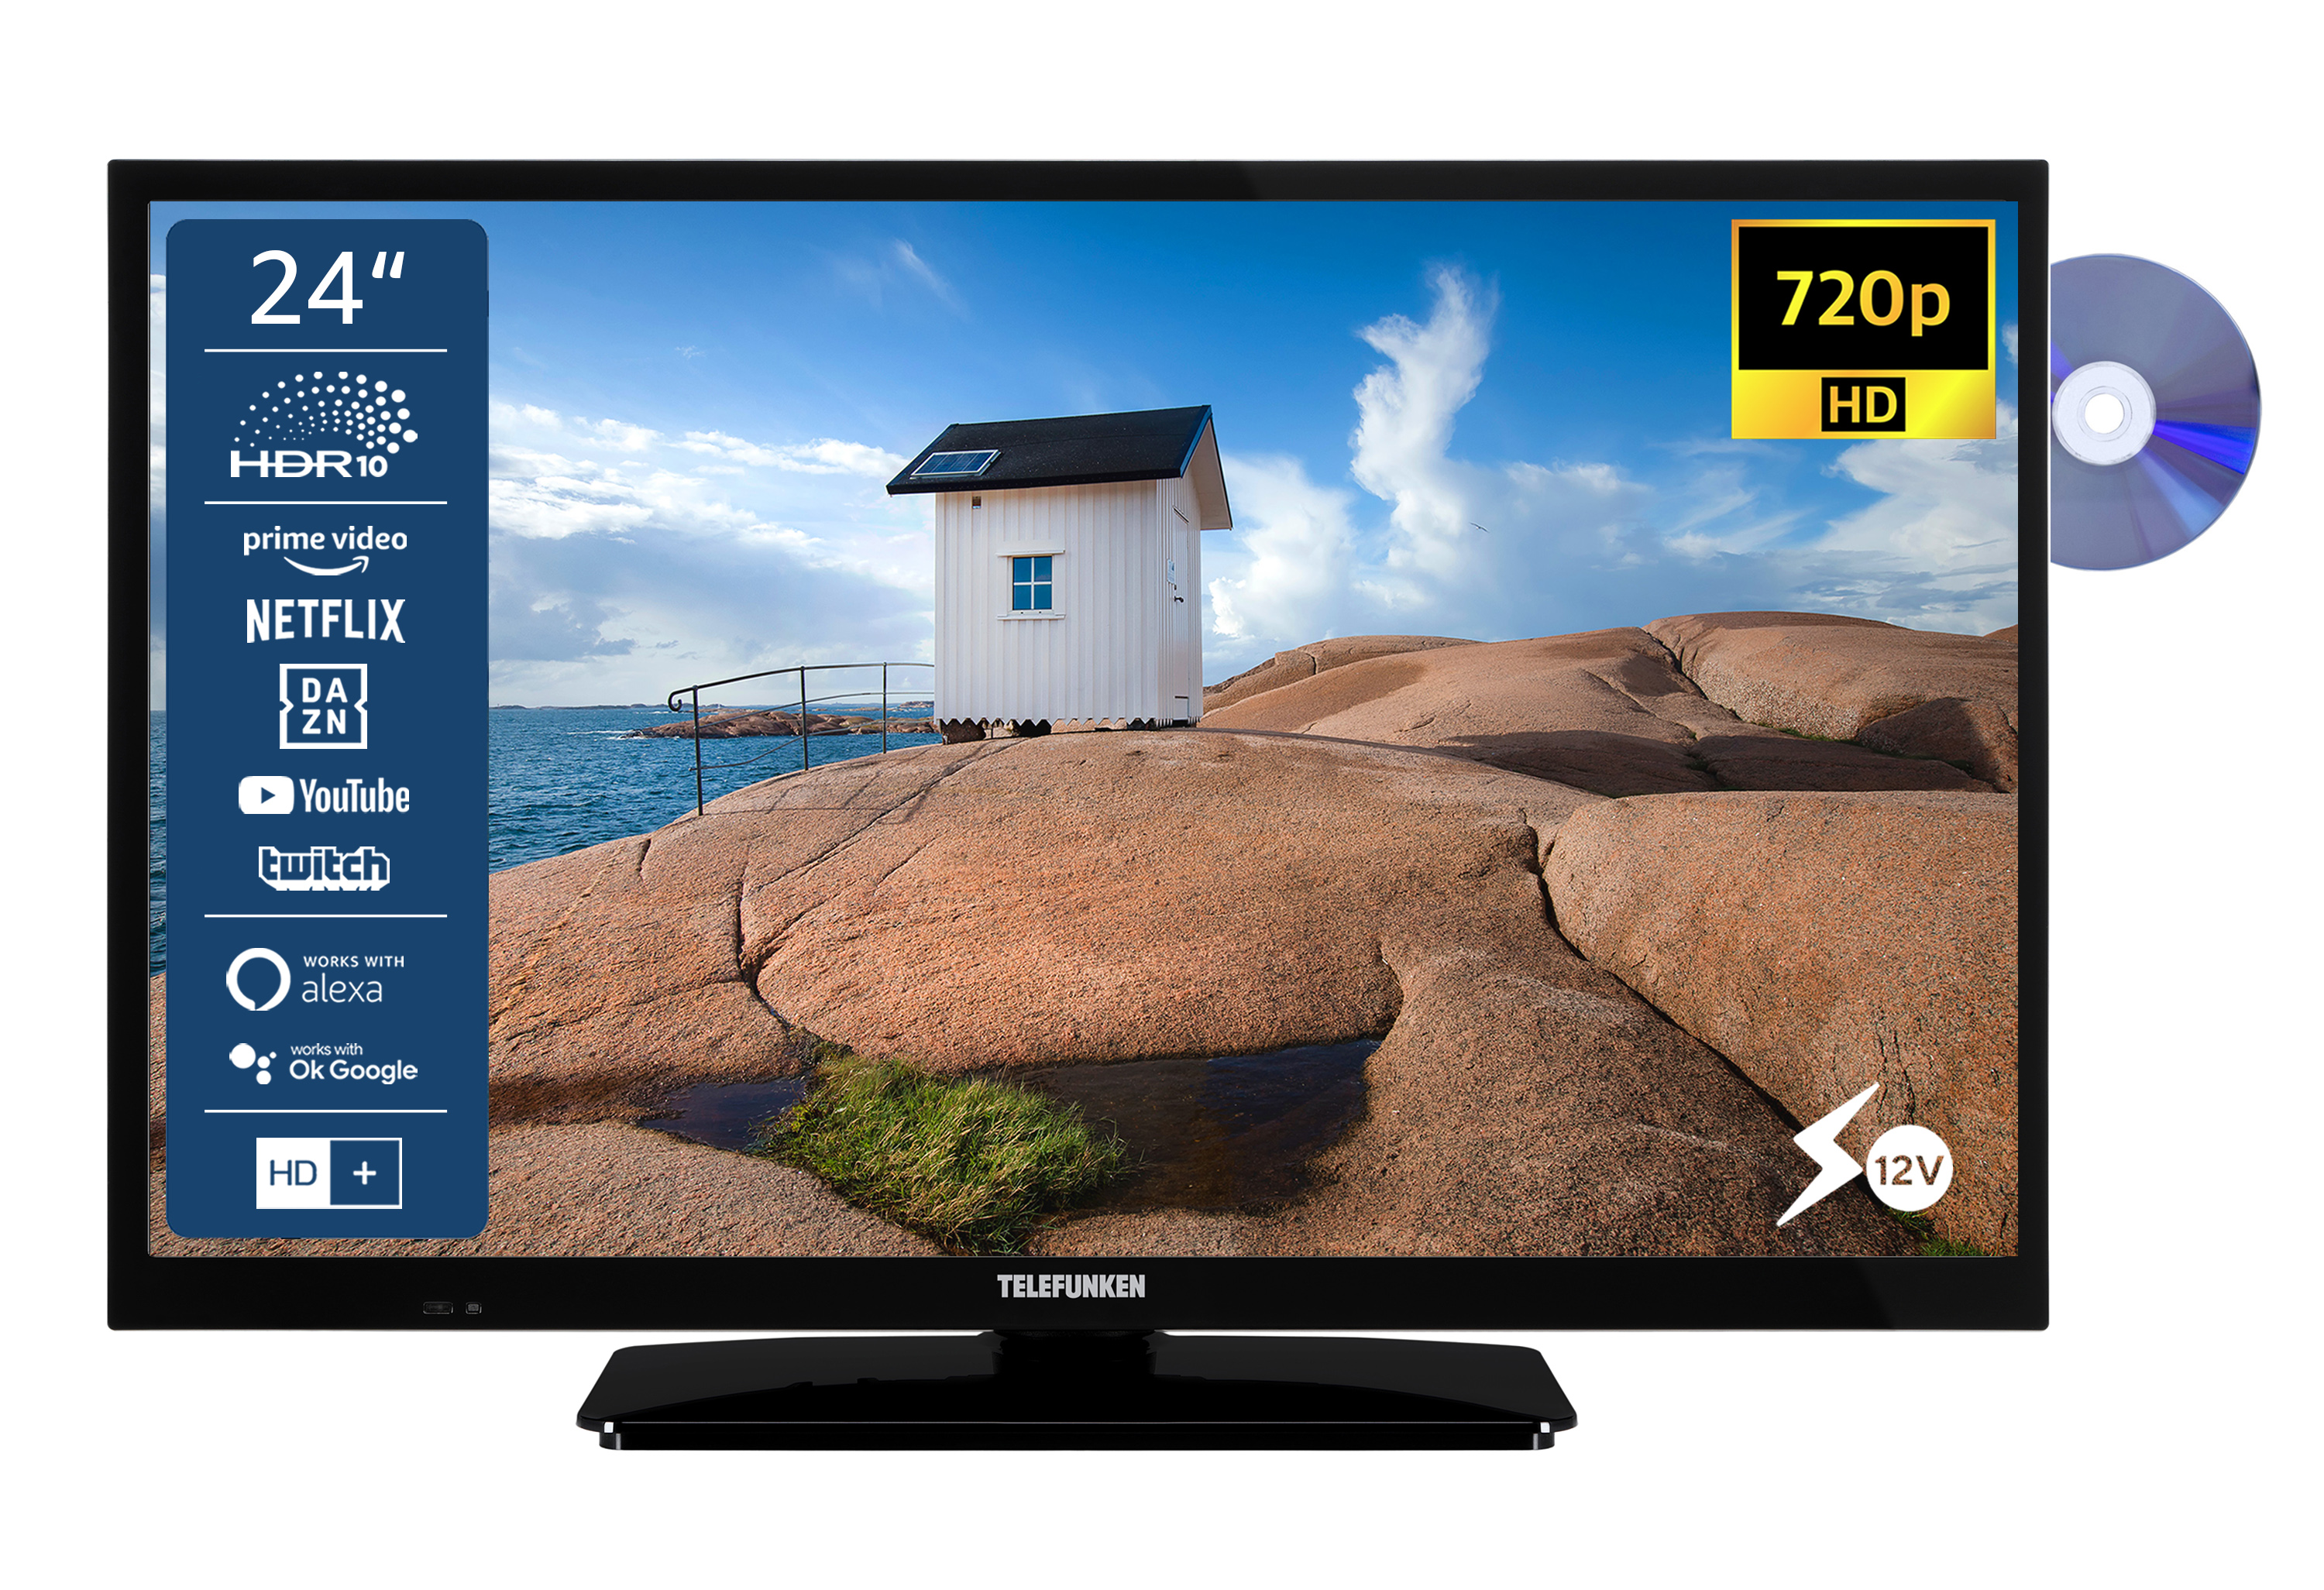 TELEFUNKEN XH24SN550MVD (Flat, 60 Zoll TV / 24 LED SMART HD-ready, cm, TV)